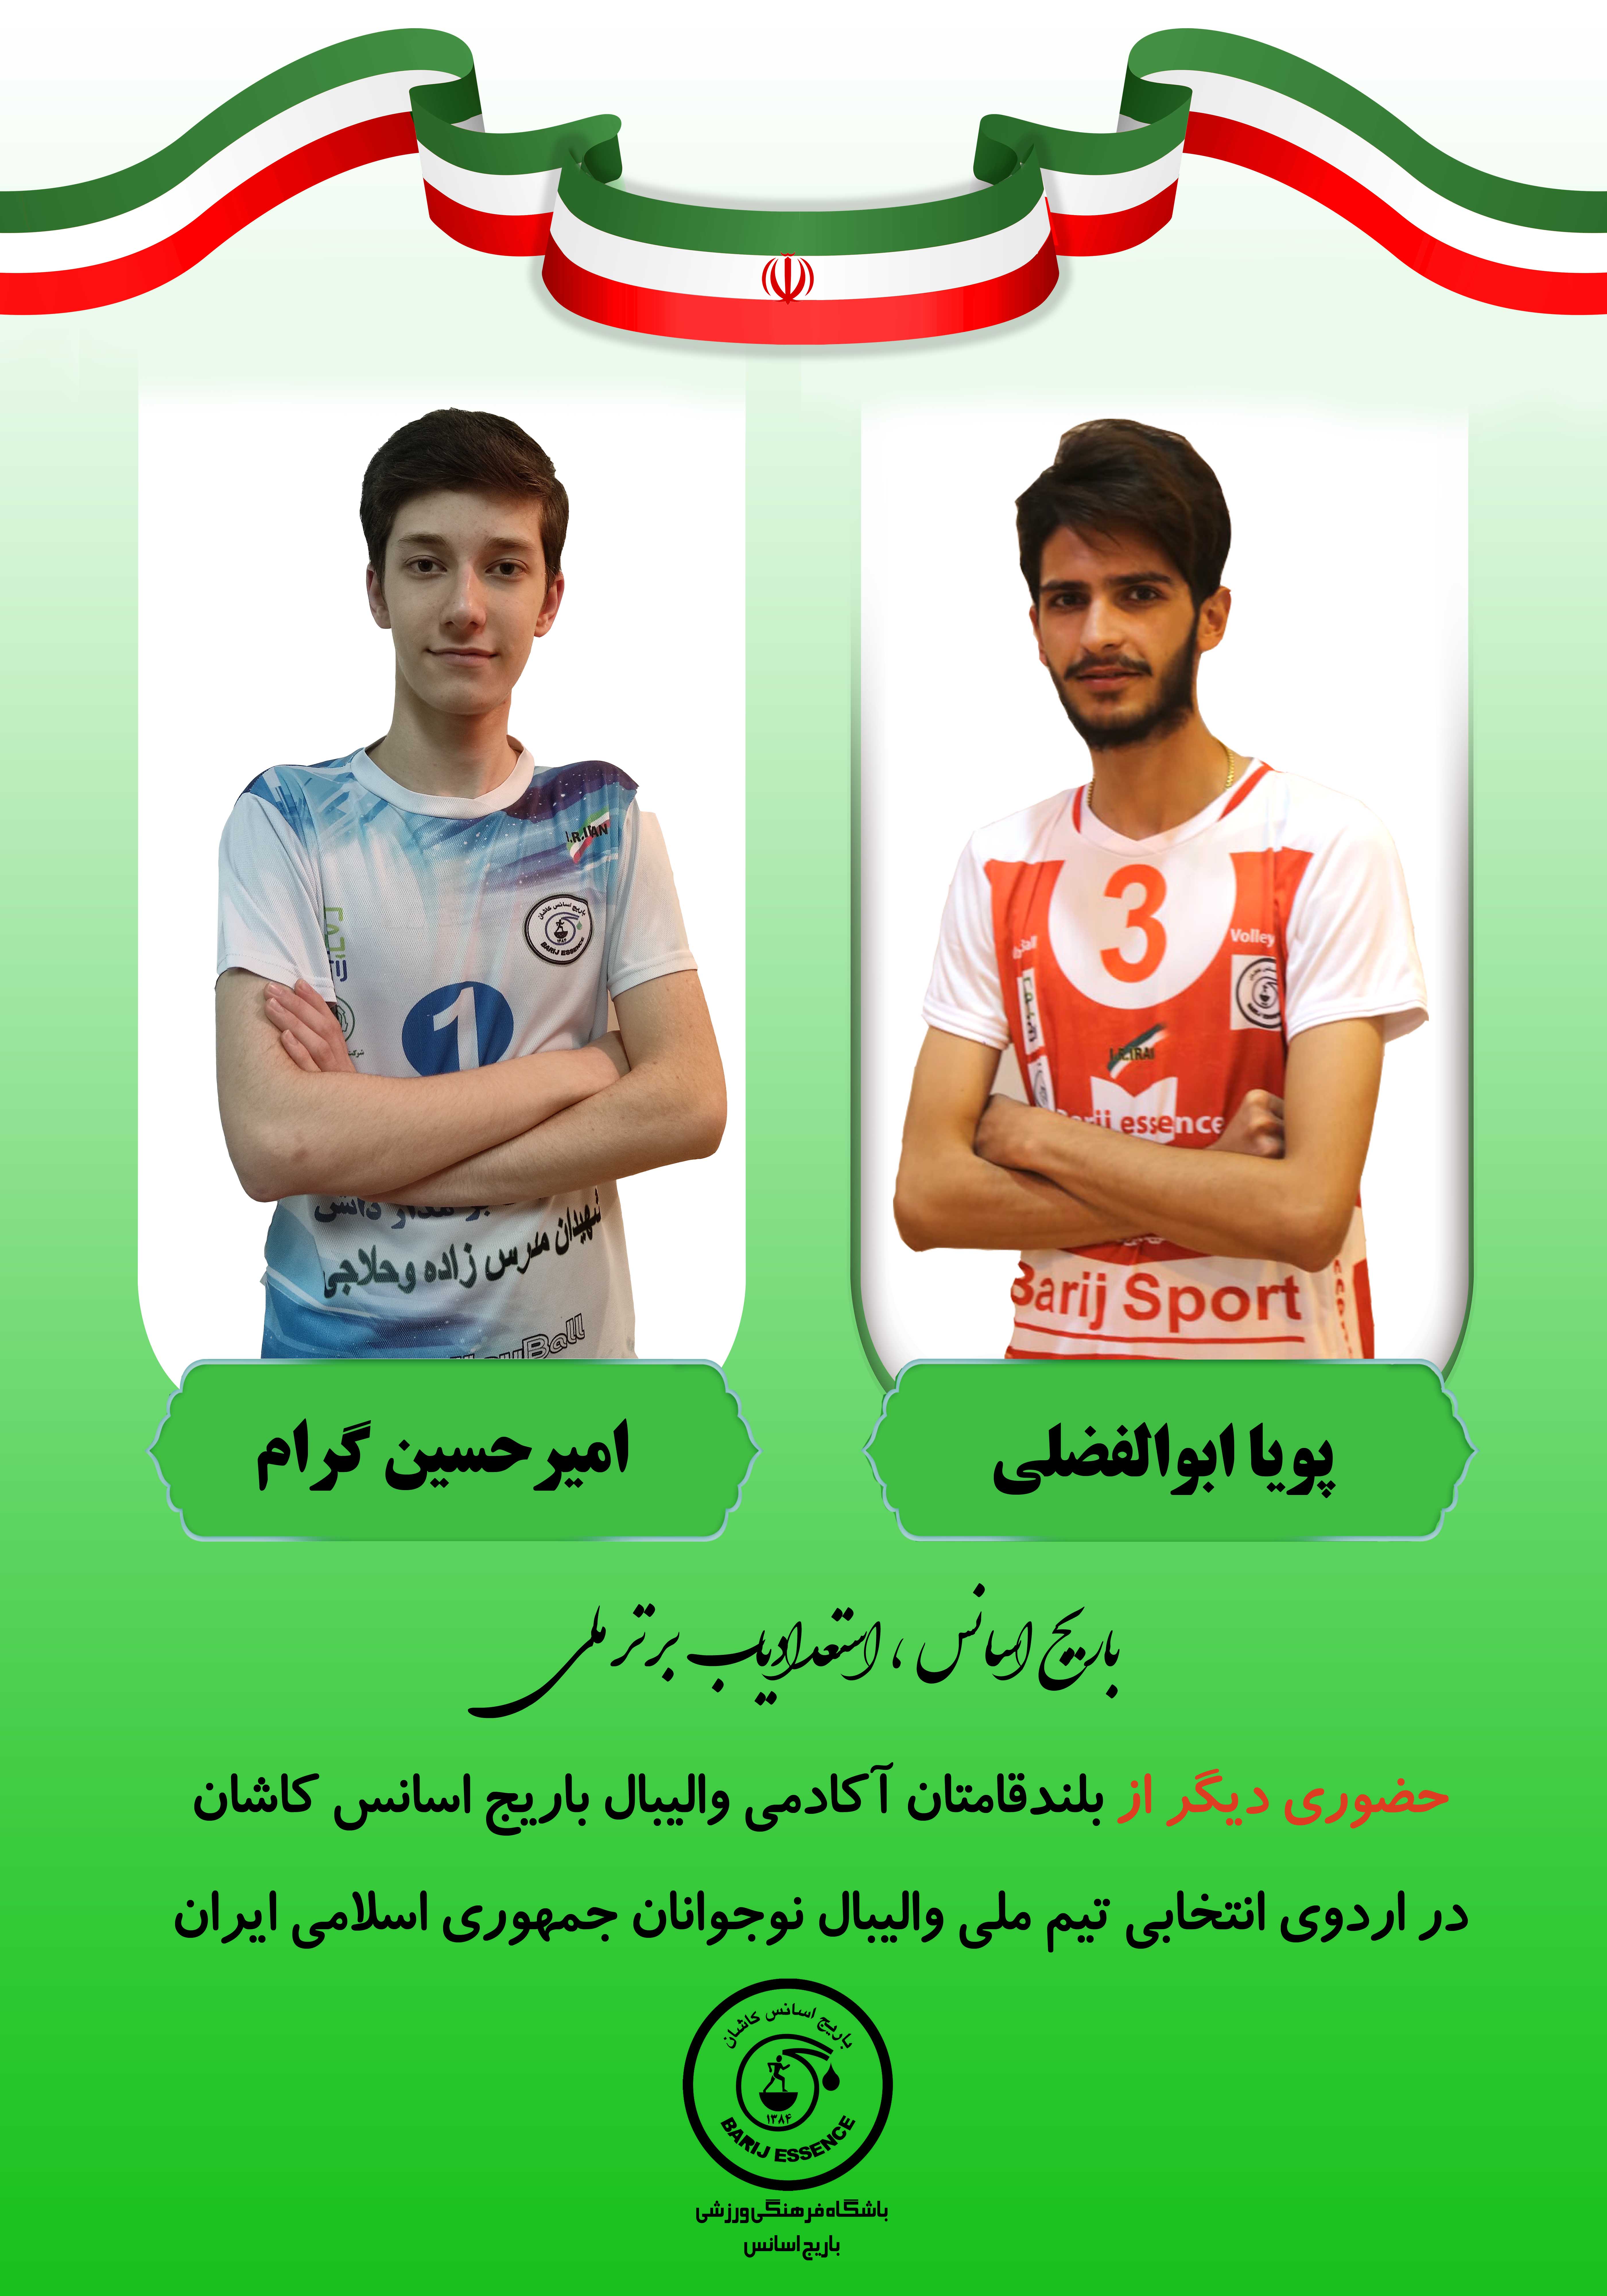  حضور دو والببال آموز دیگر از باشگاه باریج اسانس کاشان در اردوی تیم ملی والیبال نوجوانان جمهوری اسلامی ایران